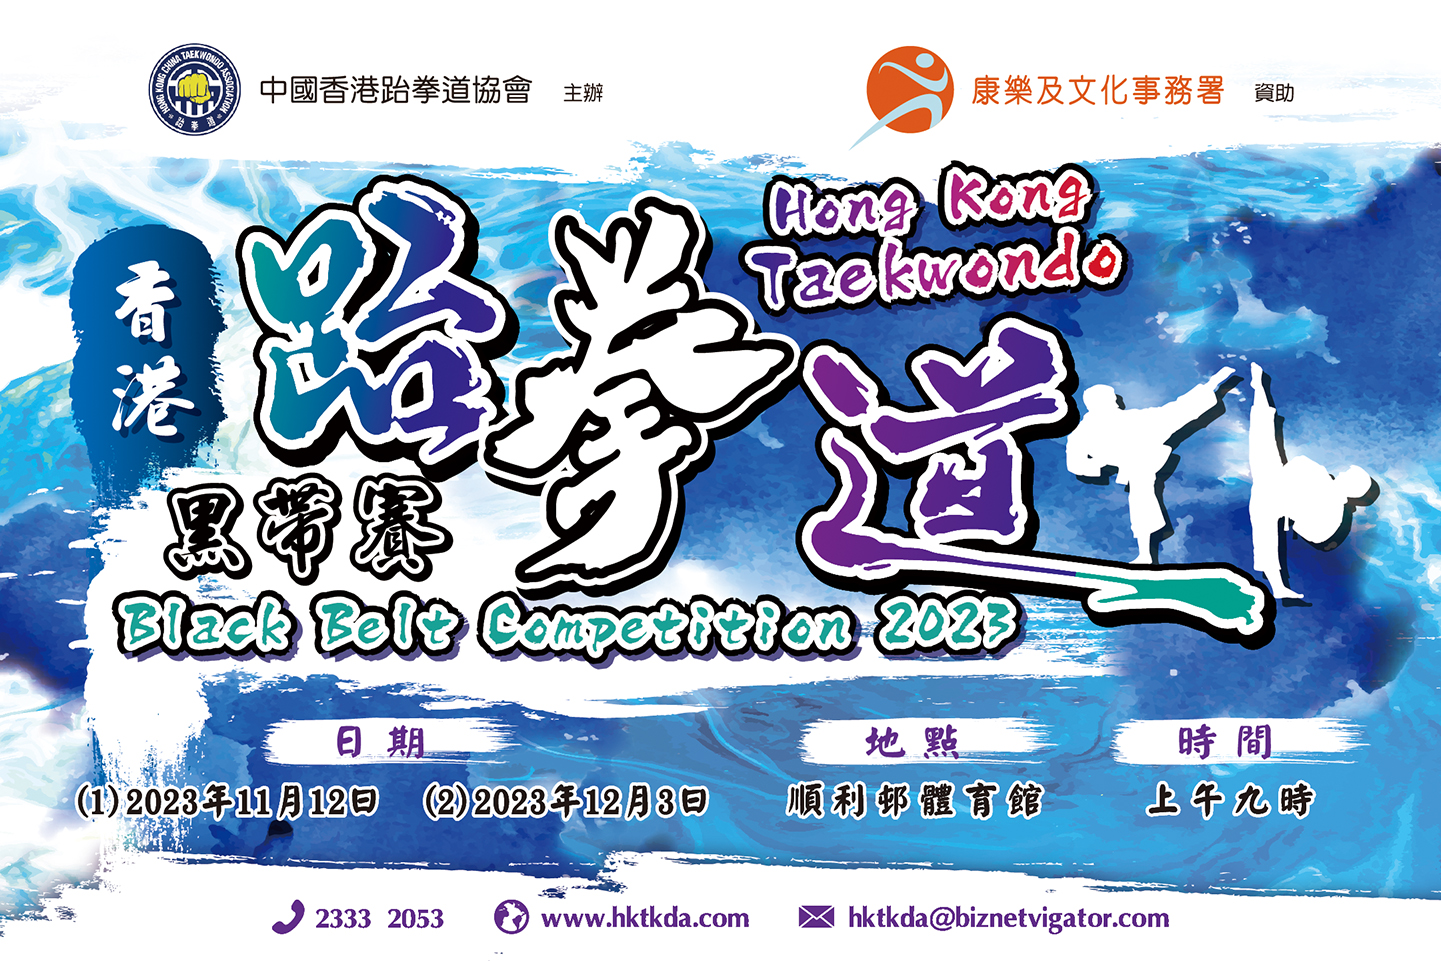 香港跆拳道黑帶賽2023